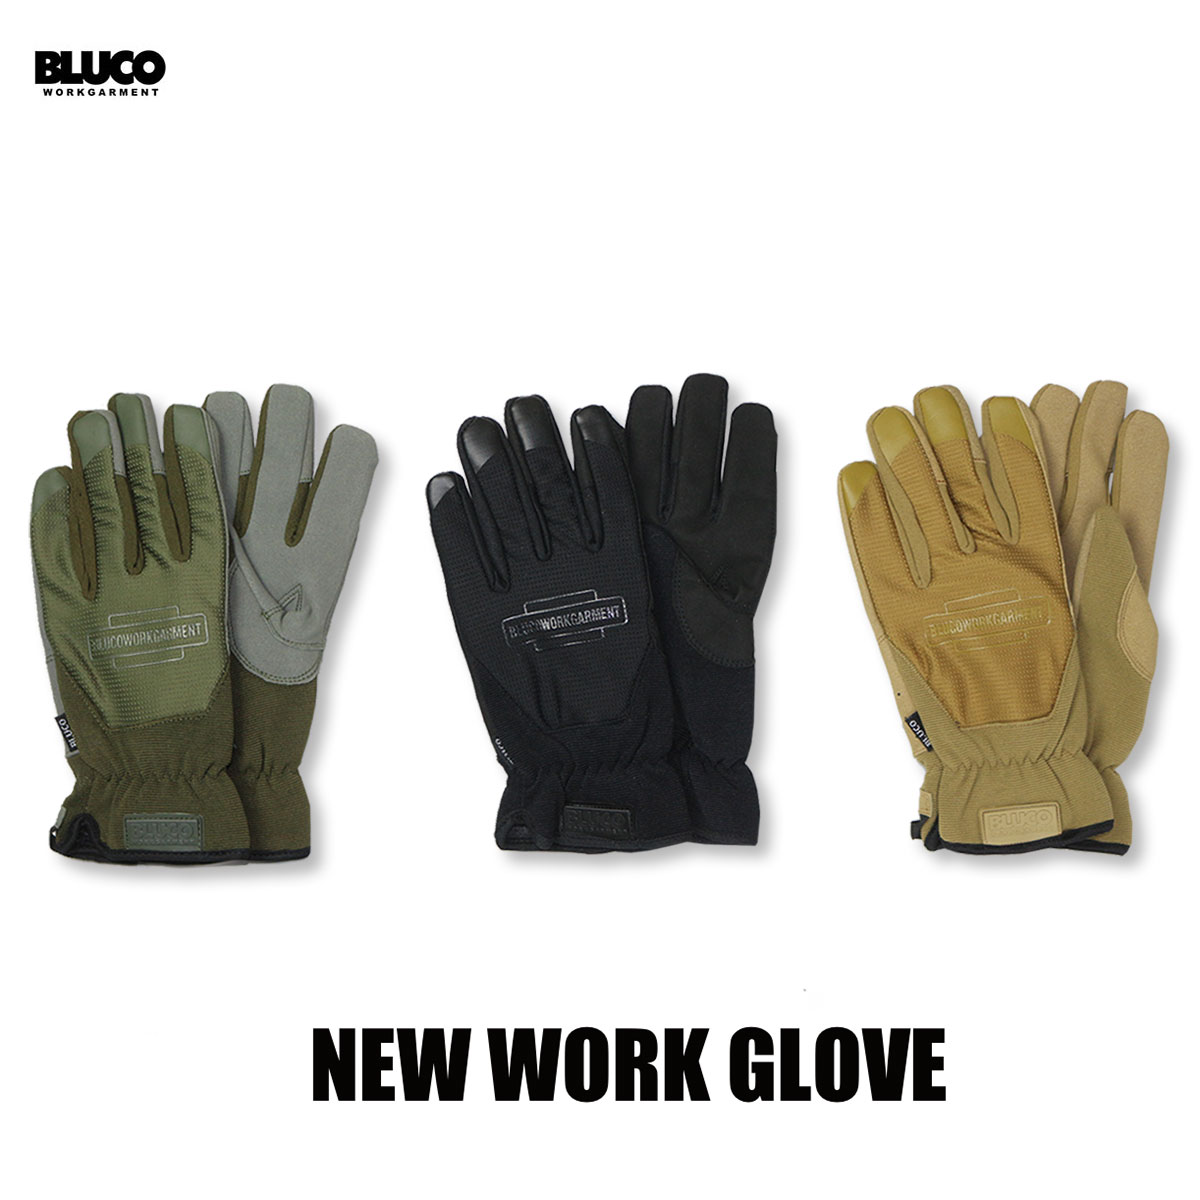 送料無料 BLUCO(ブルコ) OL-302 NEW WORK GLOVE 3色(ブラック オリーブ コヨーテ)